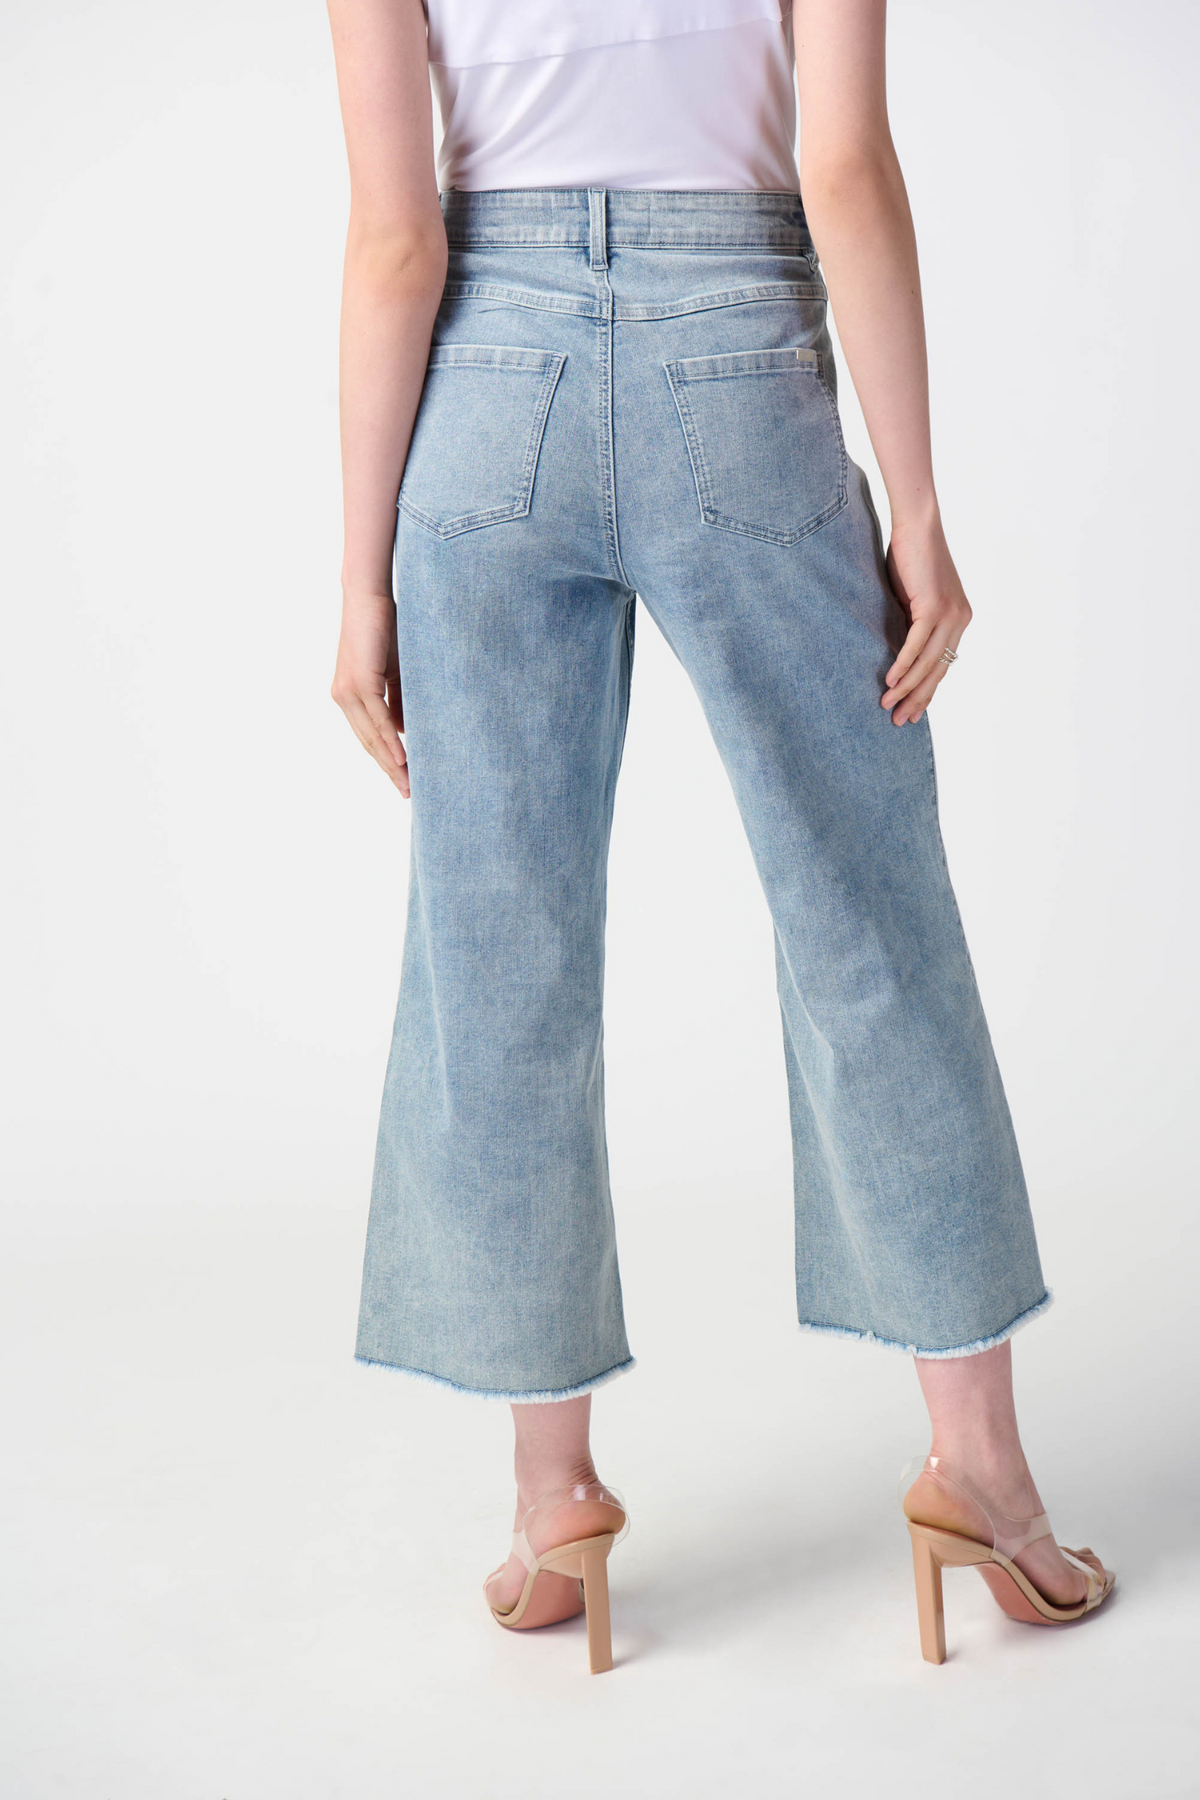 Joseph Ribkoff Culotte Jeans - Style 241903, back